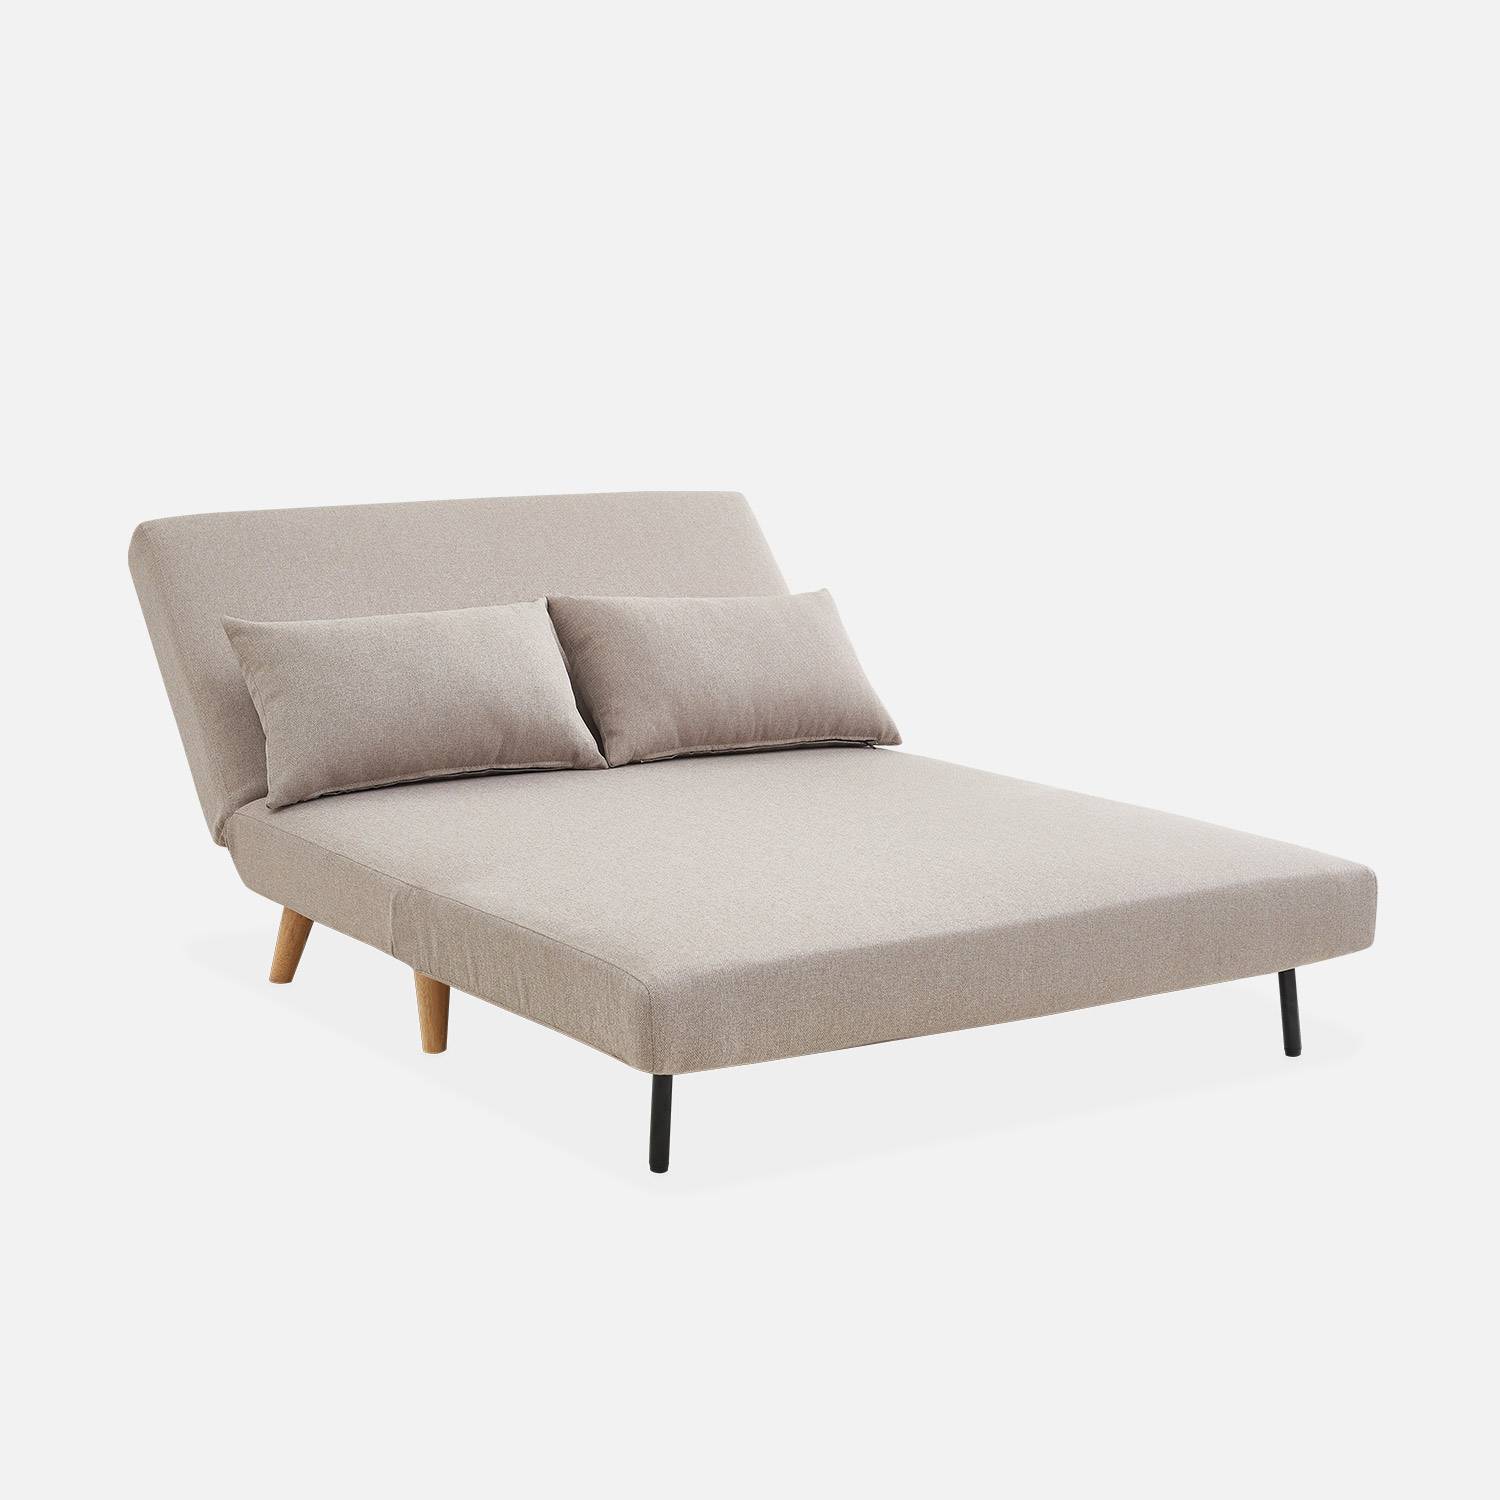 Sofá cama de tela - Guesta - Escandinavo de 2 plazas, patas de madera oscura, beige, asiento corrido, respaldo reclinable Photo6